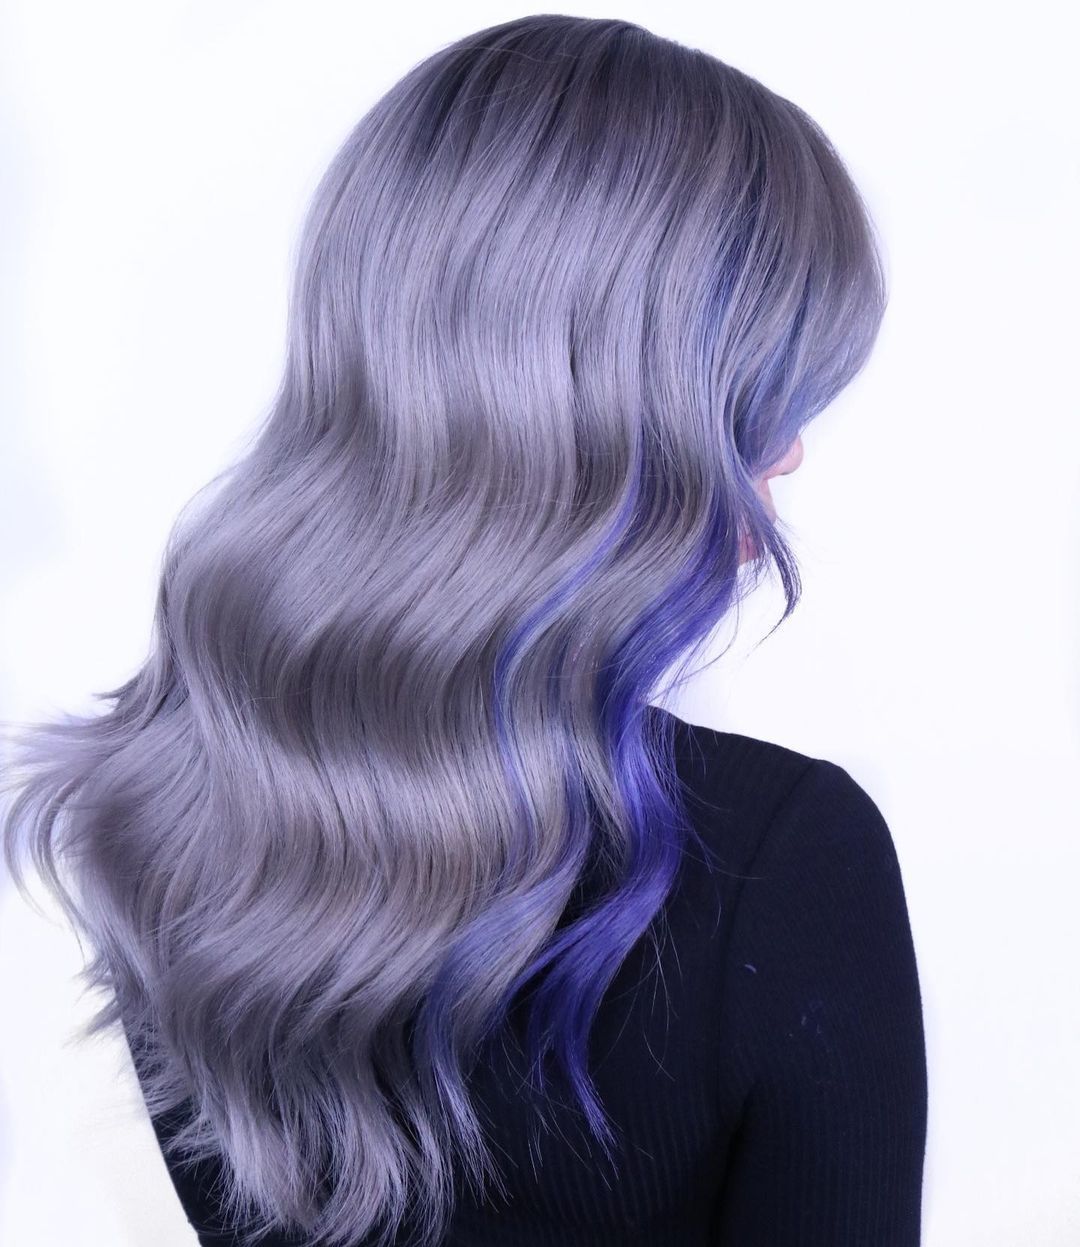 wanita dengan rambut panjang bergelombang warna biru periwinkle